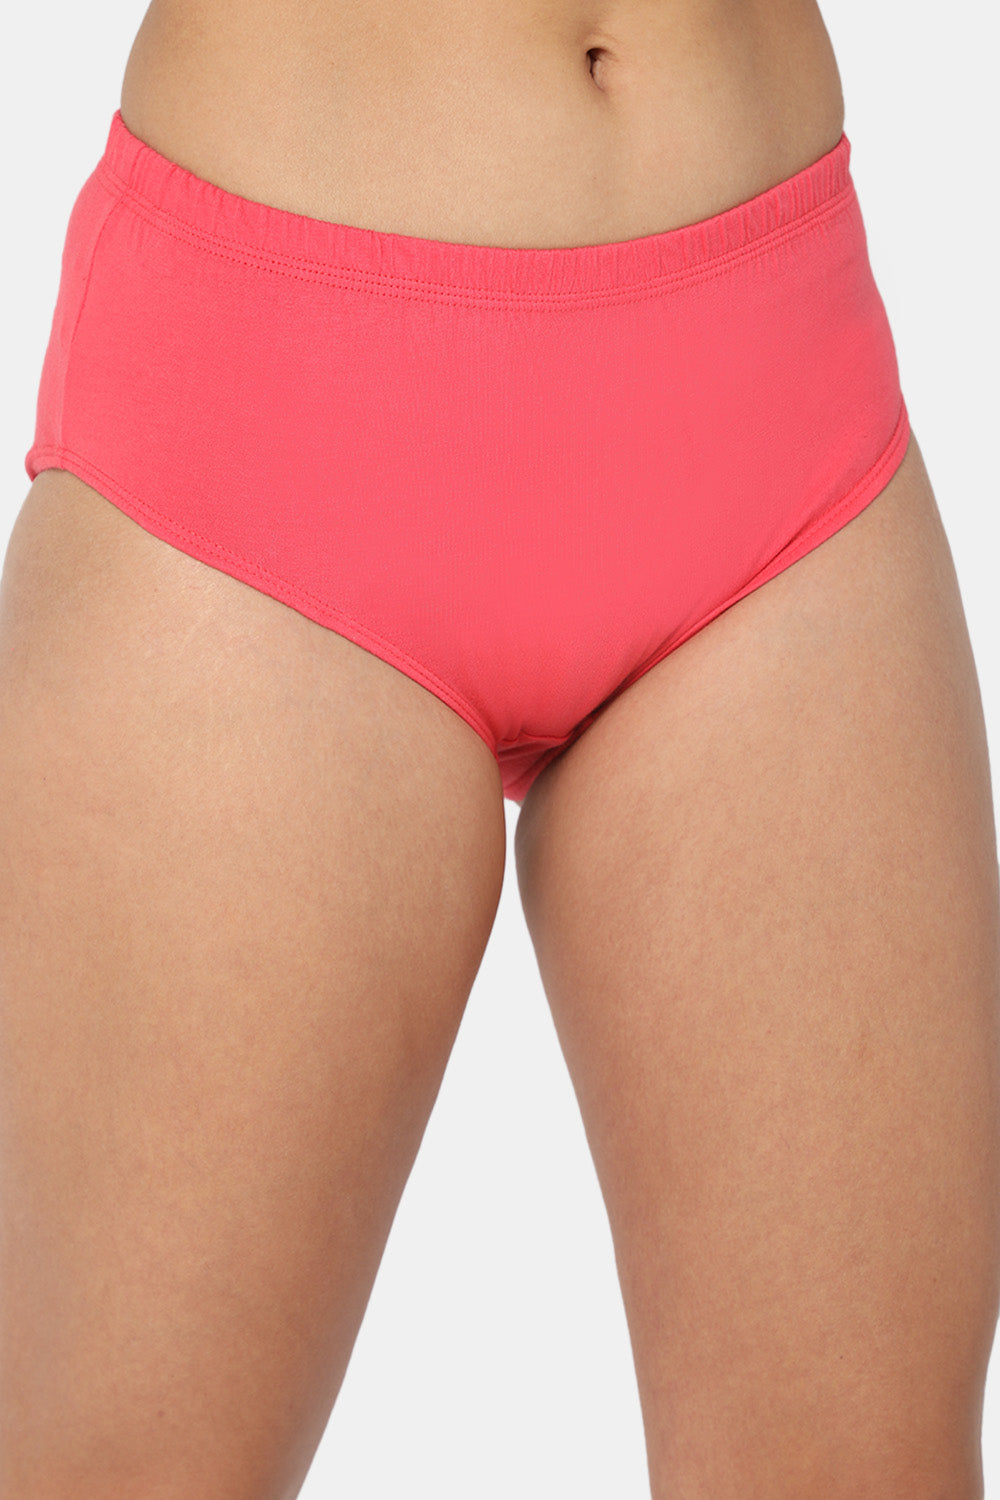 Bodycare Women's Plain Inner Elastic Panty – Online Shopping site